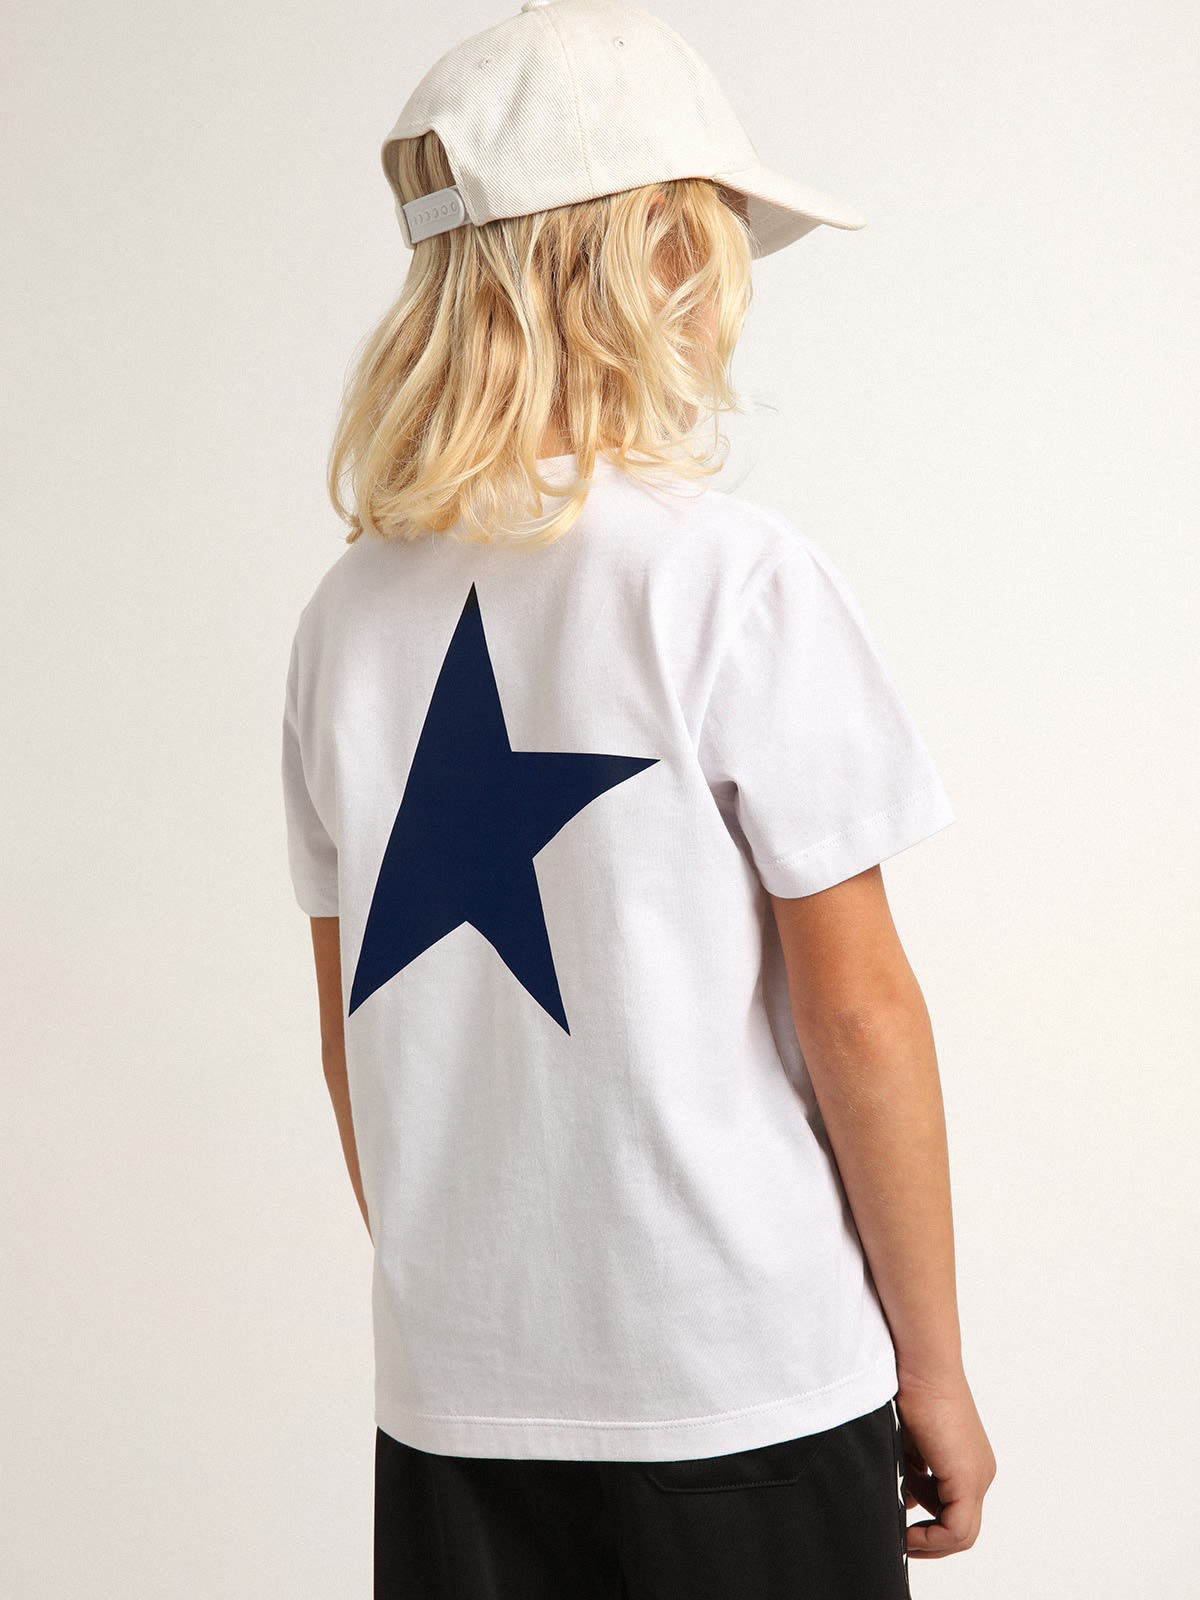 Golden Goose - Weißes Jungen-T-Shirt mit Logo und Stern in dunkelblauem Kontrastton in 